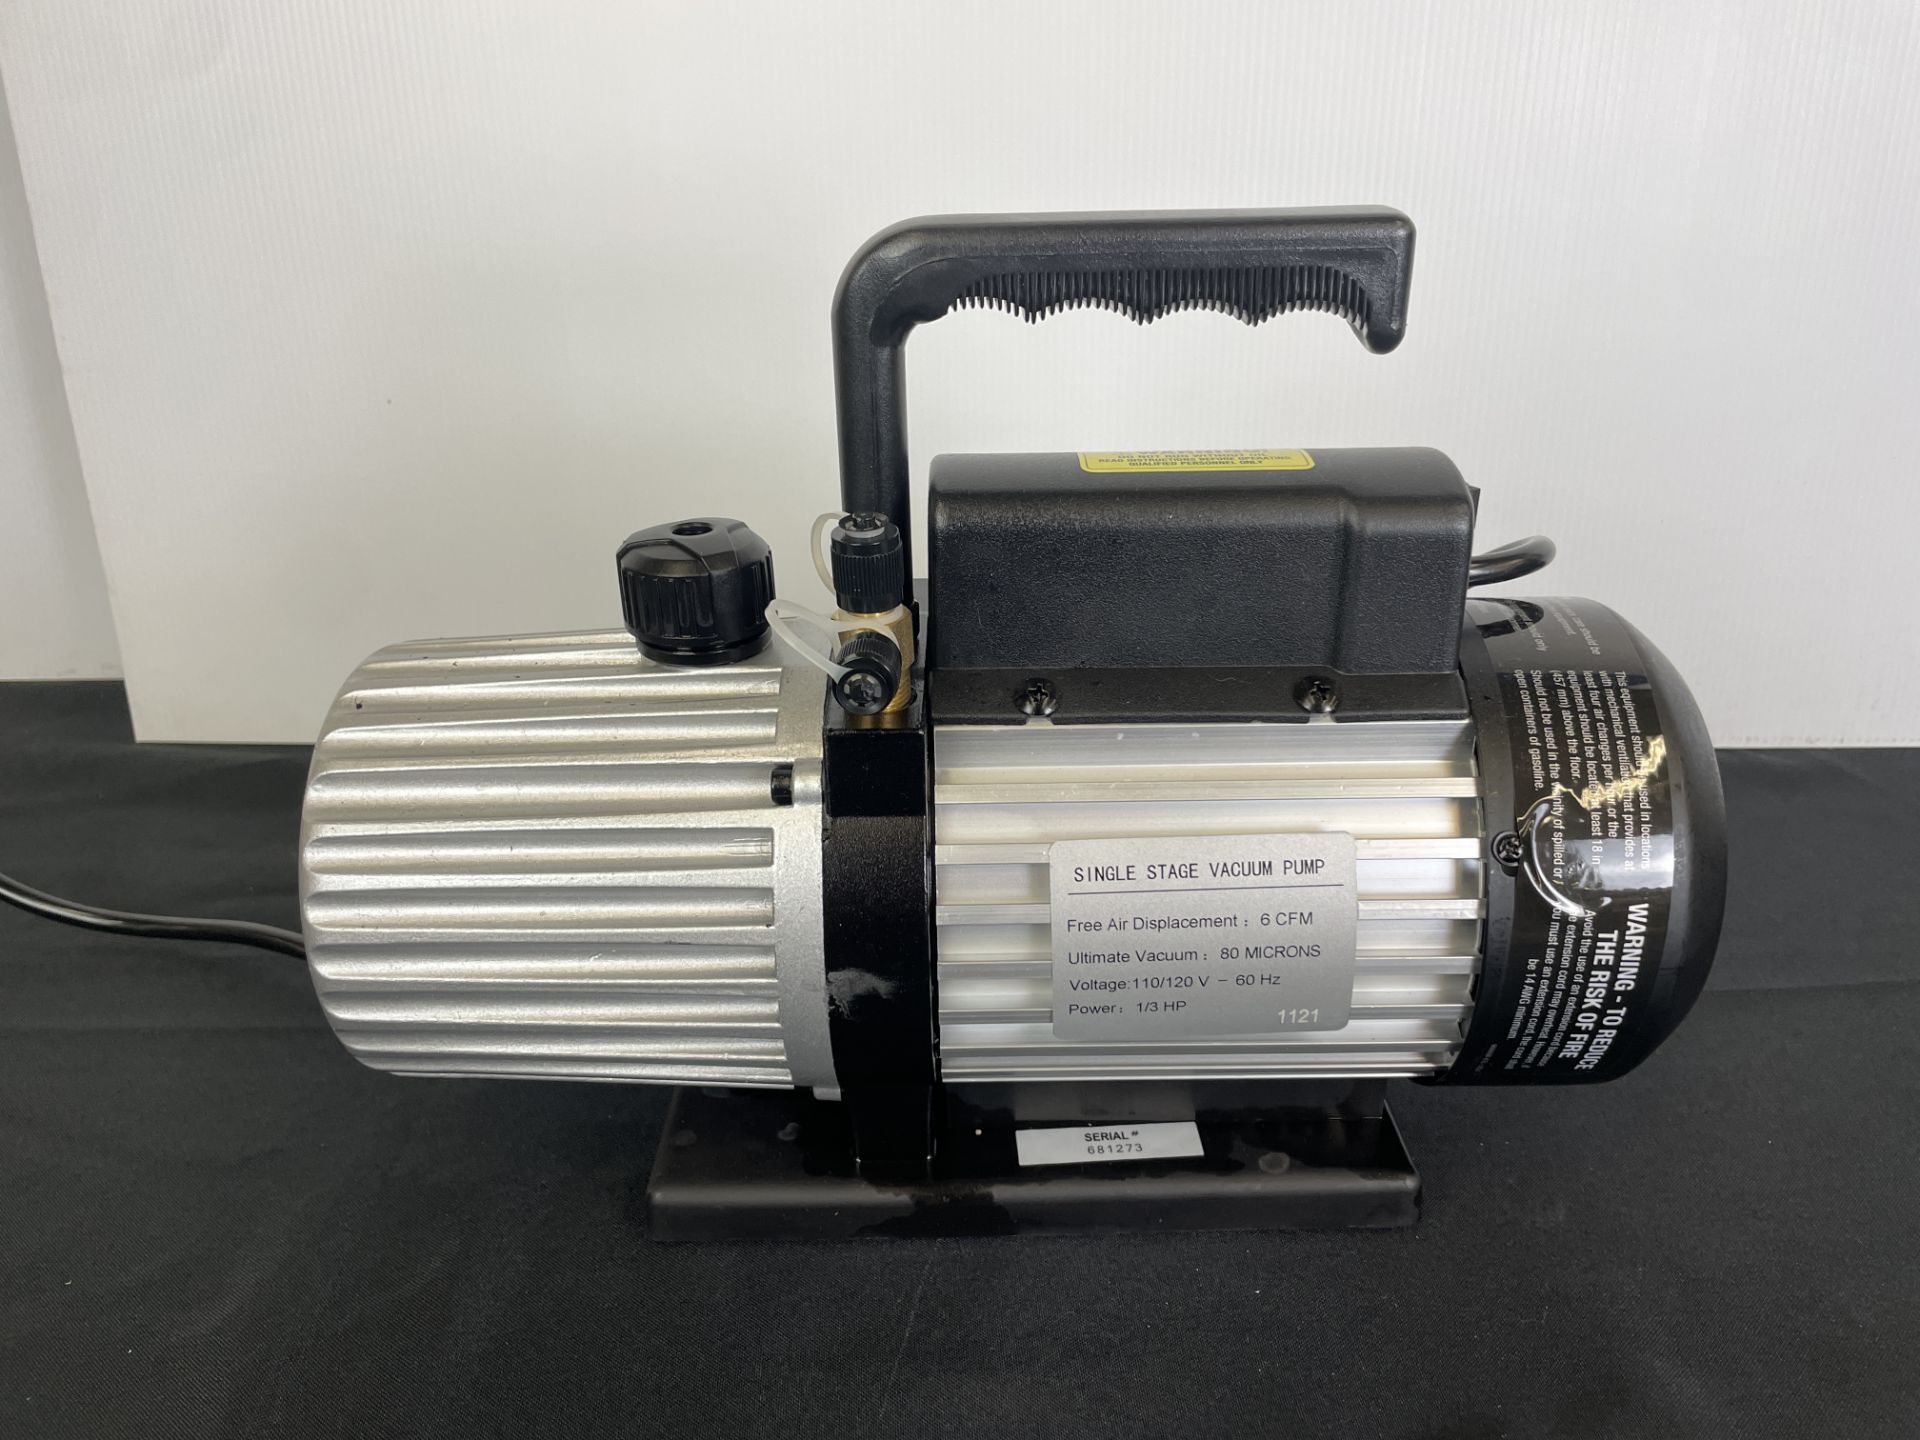 MasterCool 6 CFM Vacuum Pump #90066-B - Image 5 of 5